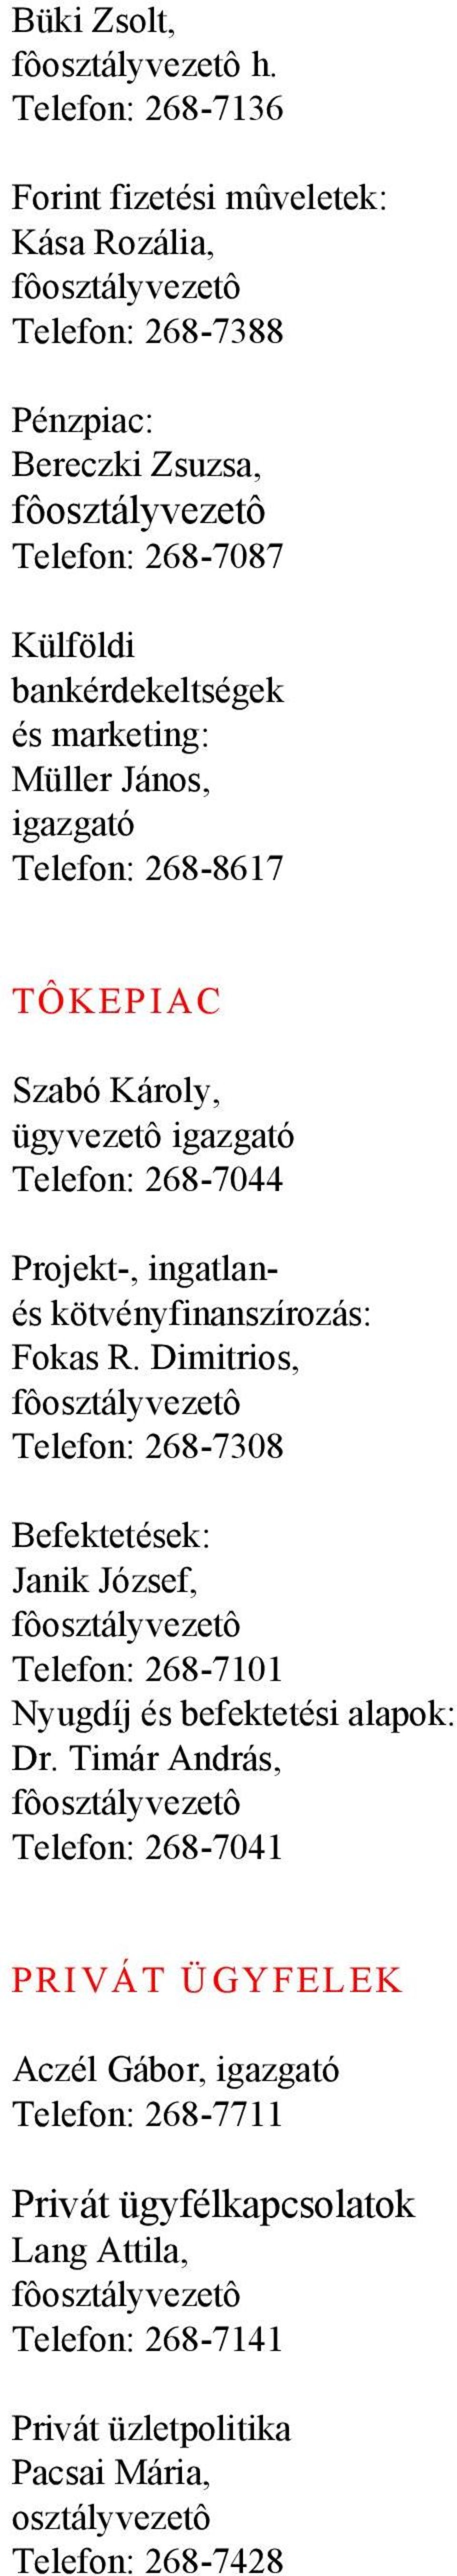 marketing: Müller János, igazgató Telefon: 268-8617 TÔKEPIAC Szabó Károly, Telefon: 268-7044 Projekt-, ingatlanés kötvényfinanszírozás: Fokas R.